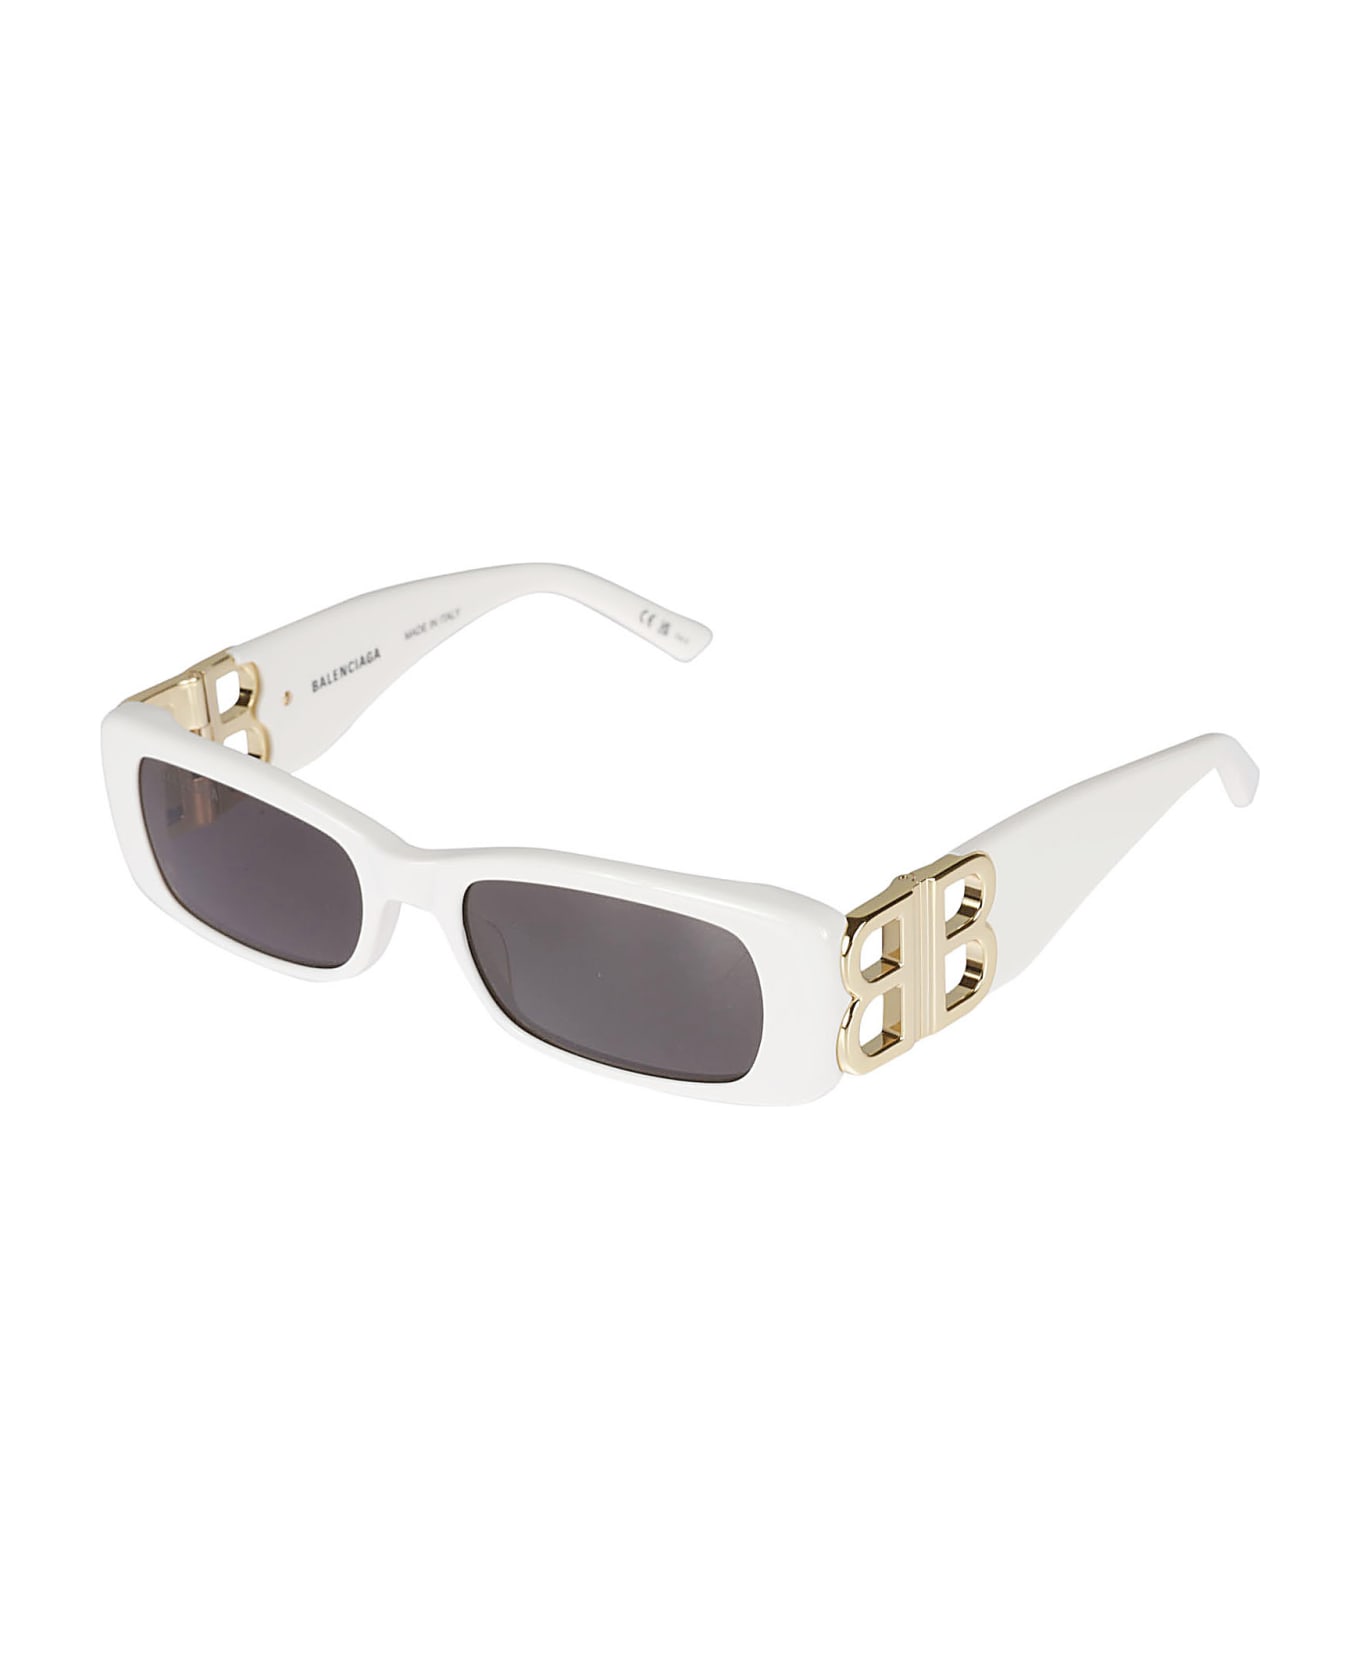 Balenciaga Eyewear Logo Sided Rectangle Sunglasses - Nero